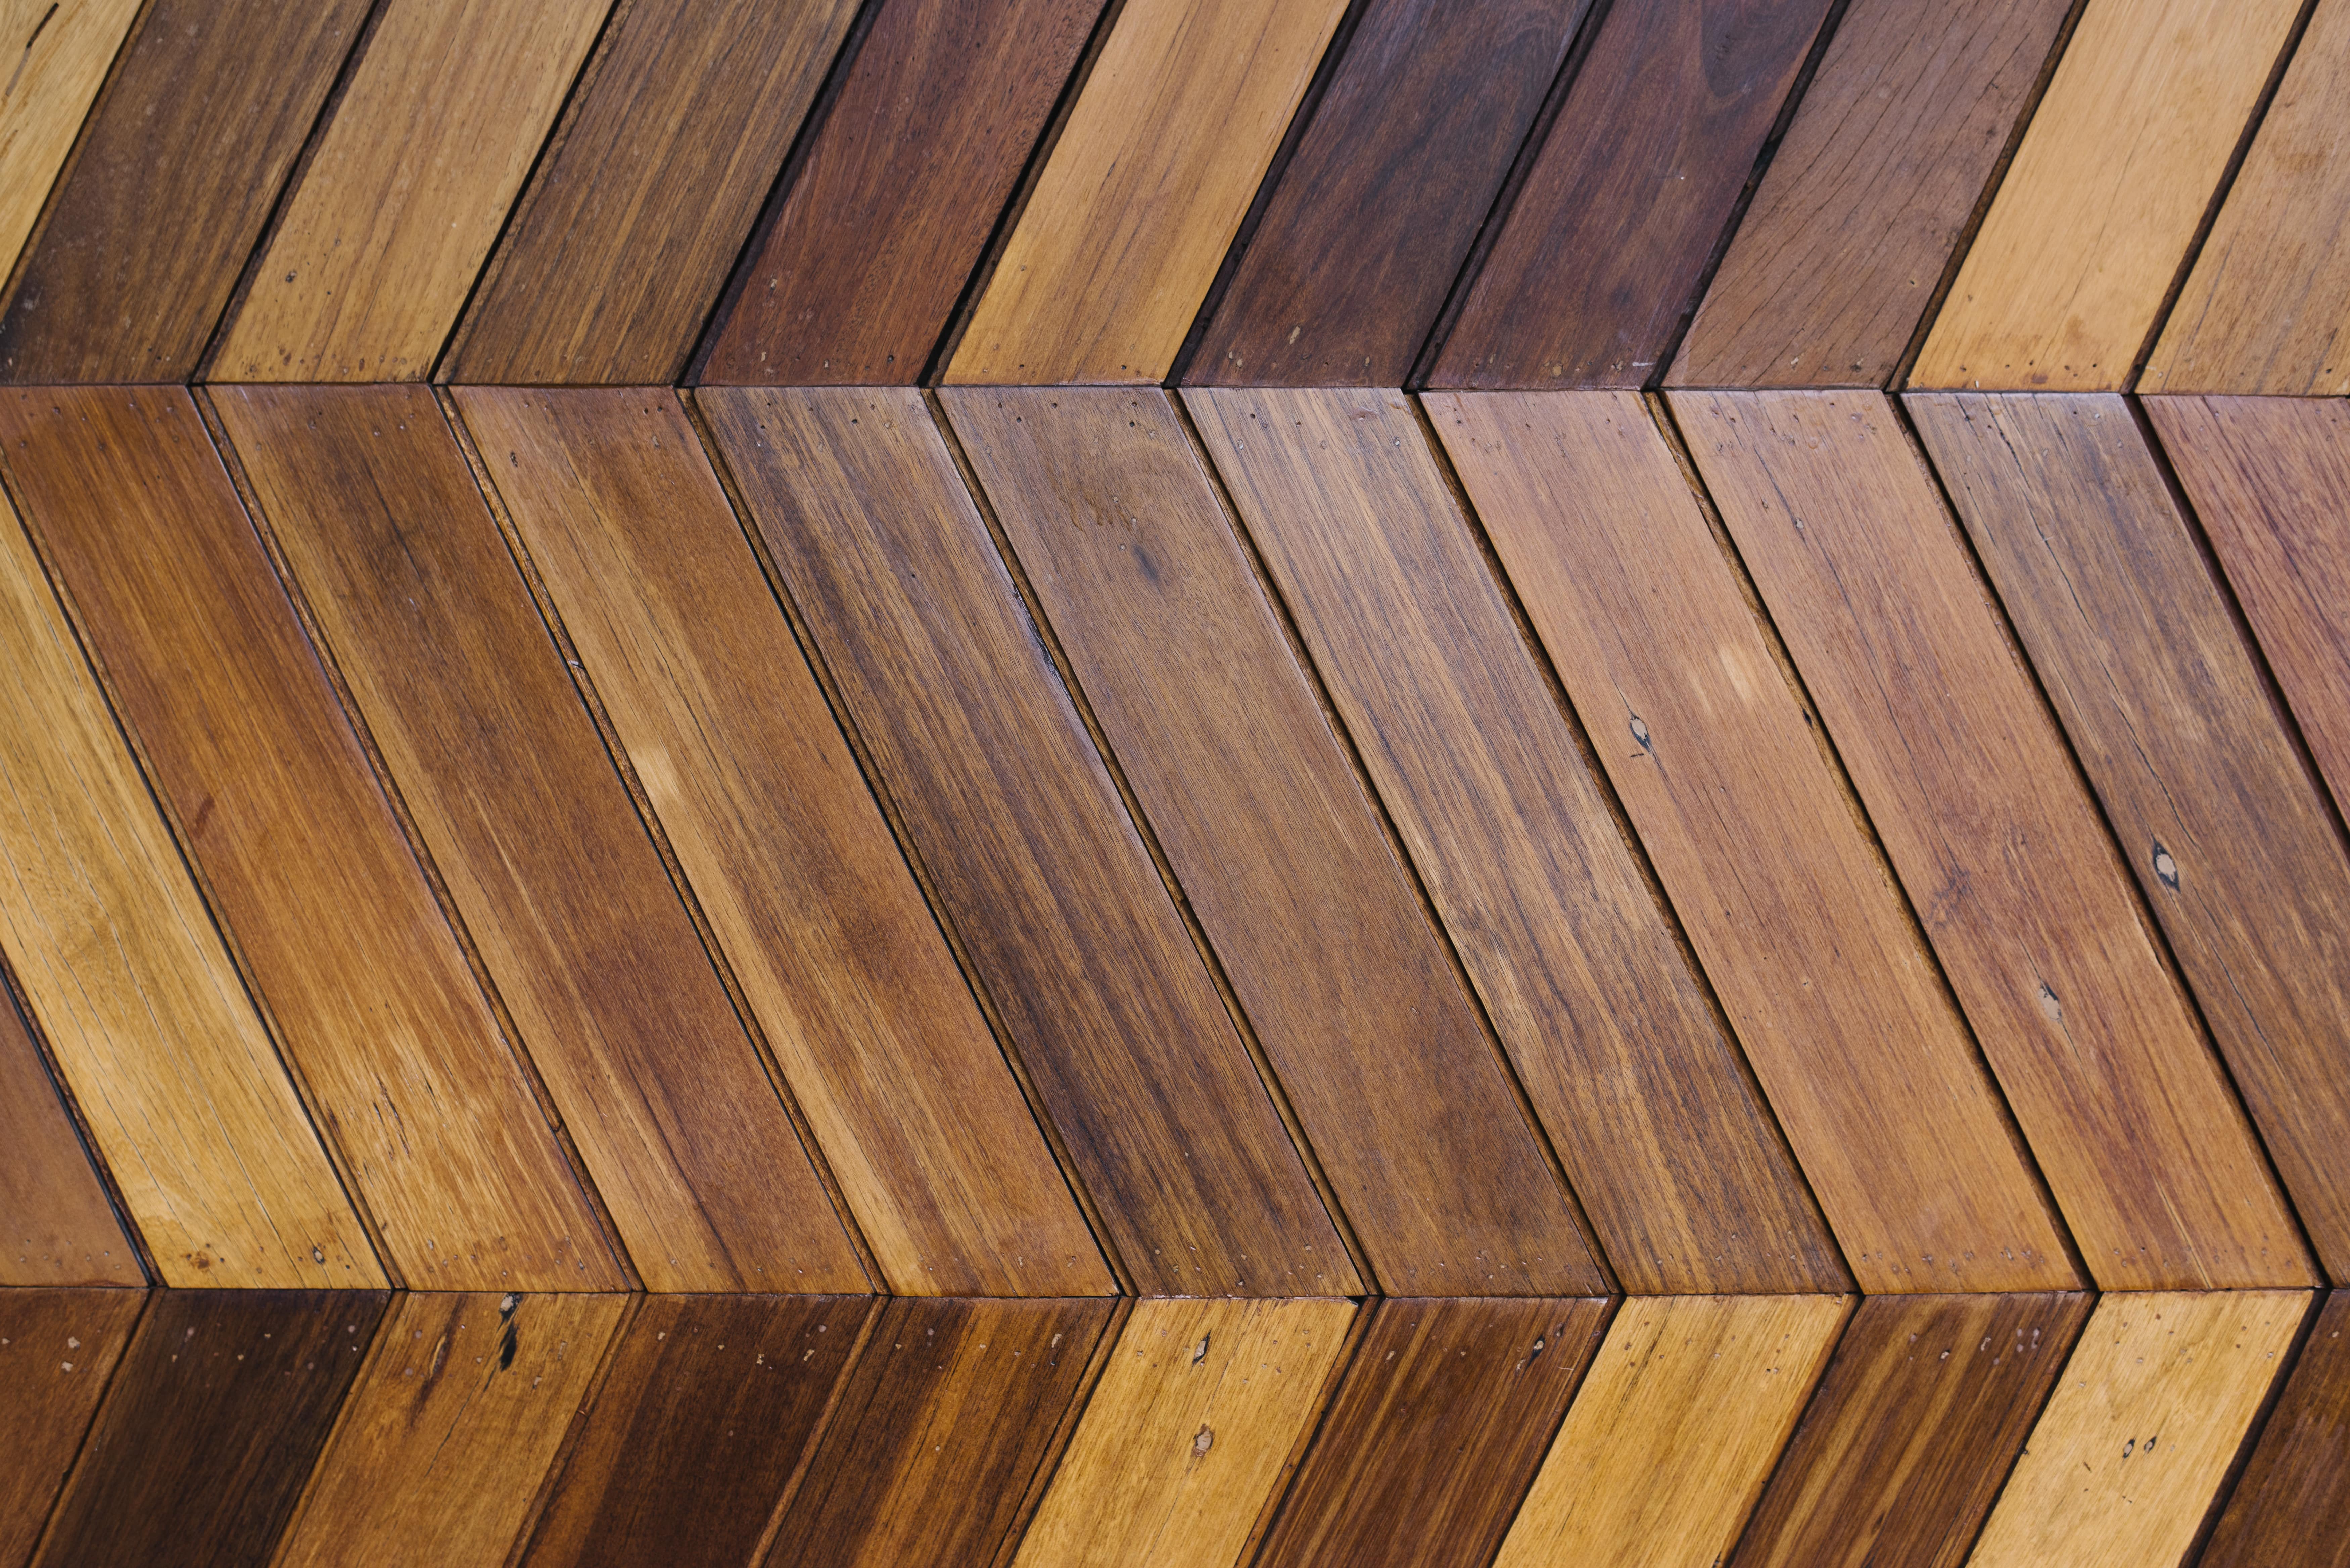 Le bois teck massif possède des caractéristiques intéressantes pour vos travaux